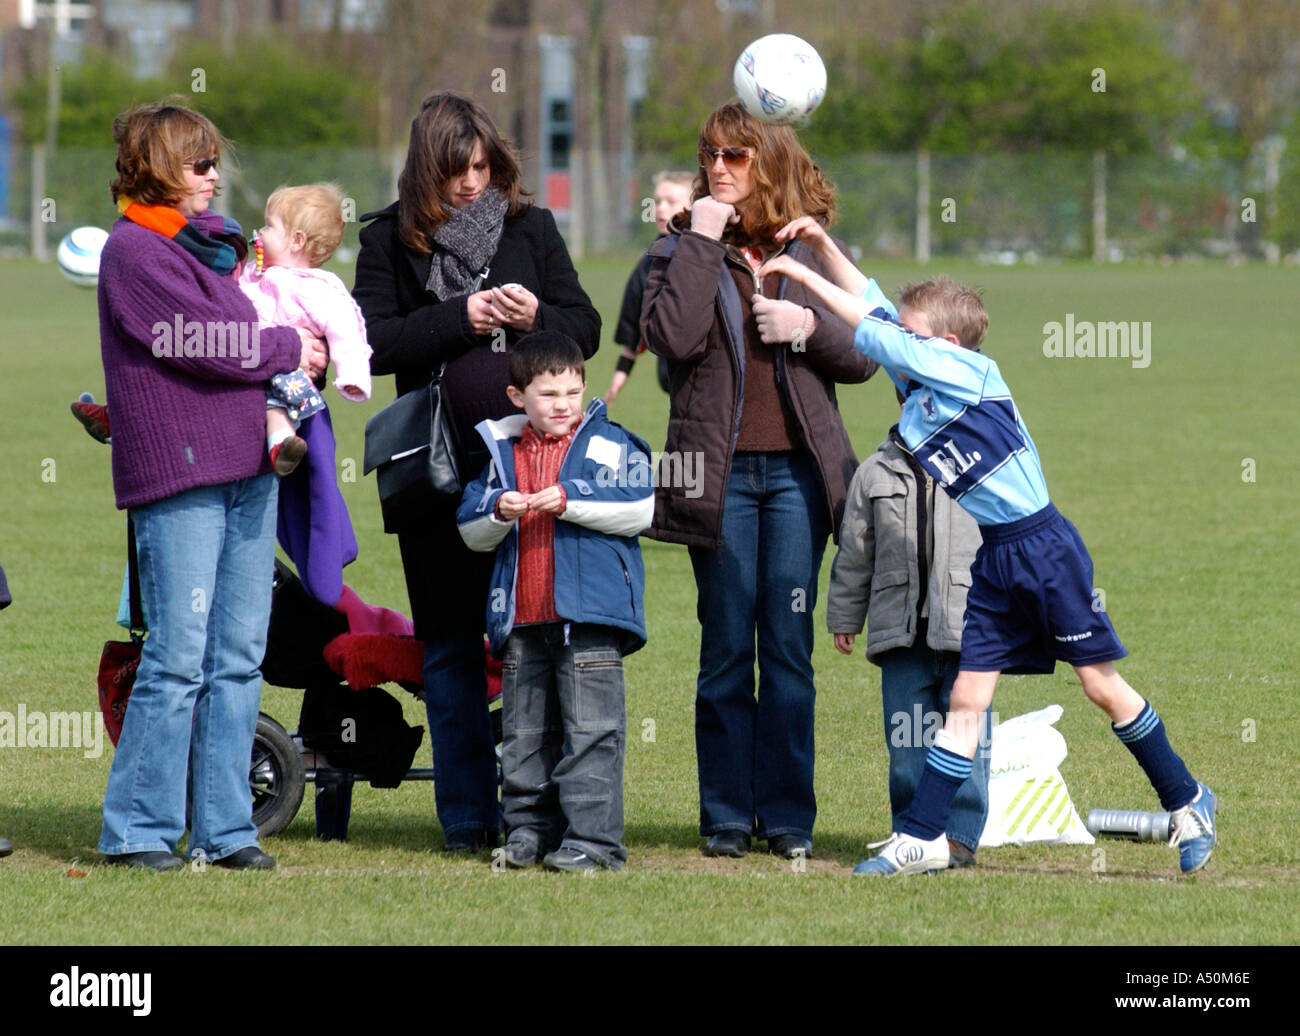 Aktion von einem jungen Fußballspiel in England UK Stockfoto